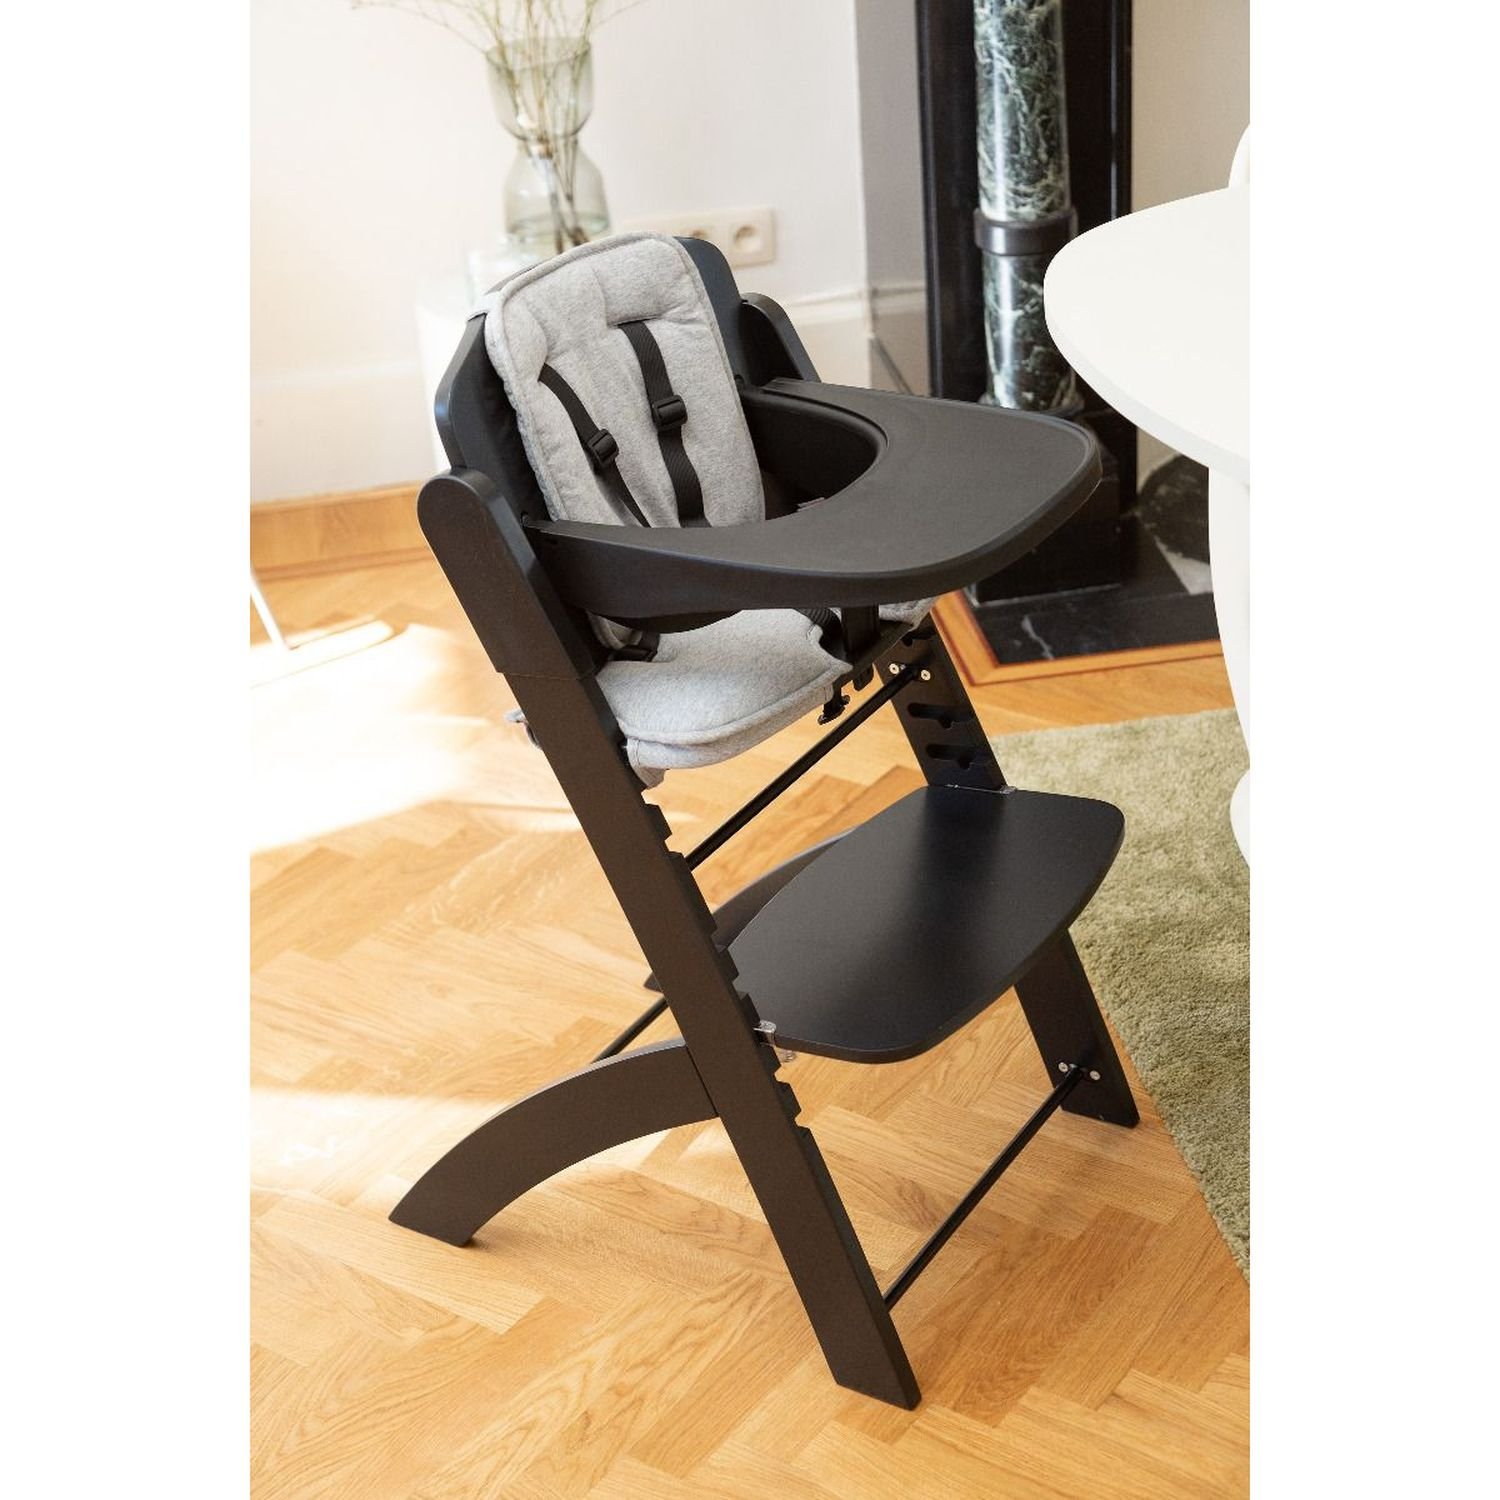 Подушка к стулу для кормления Childhome Evosit High Chair, серая (CCEVOSITJG) - фото 7